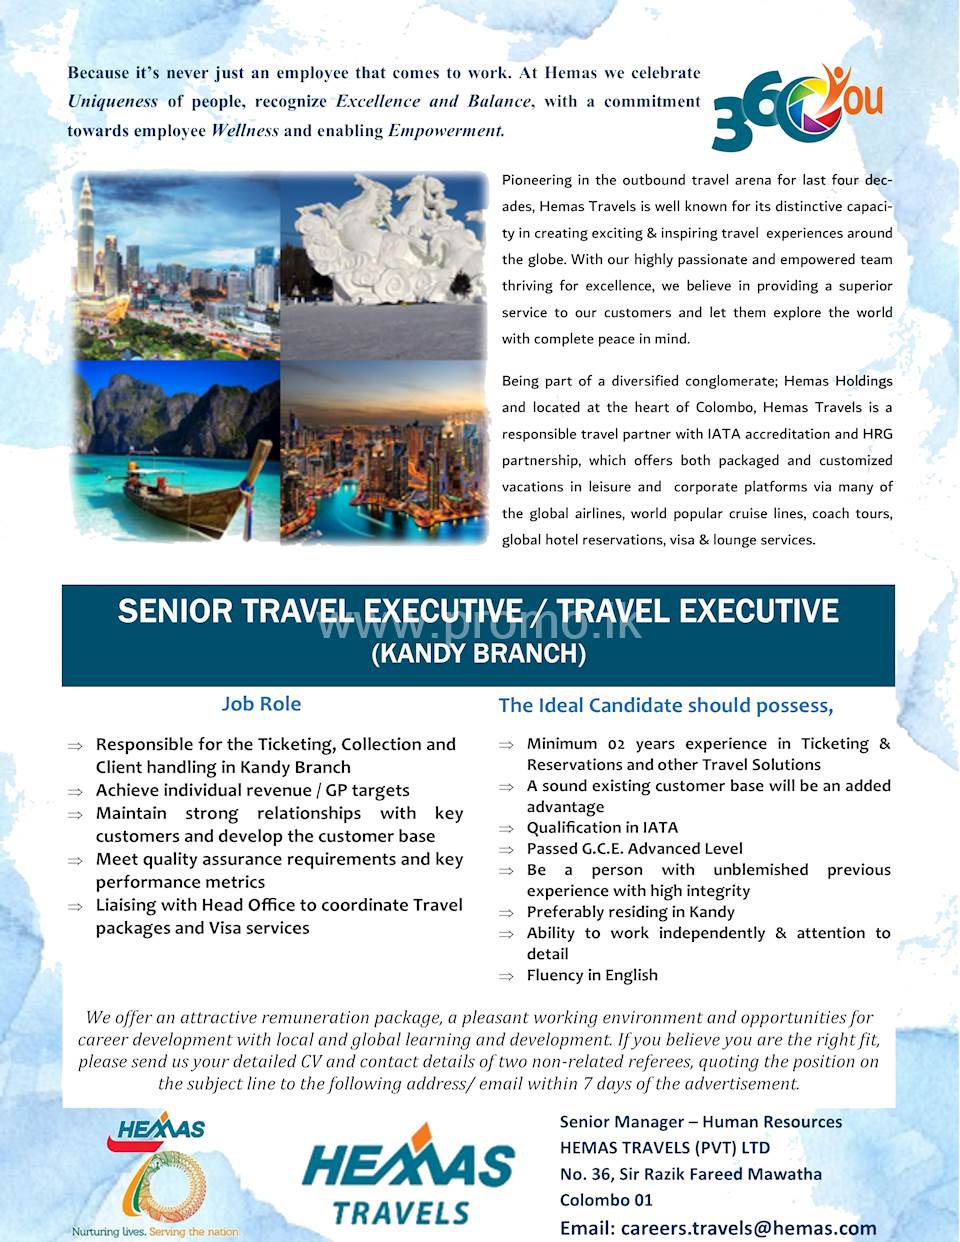 Senior Travel Executive / Travel Executive - Kandy Branch